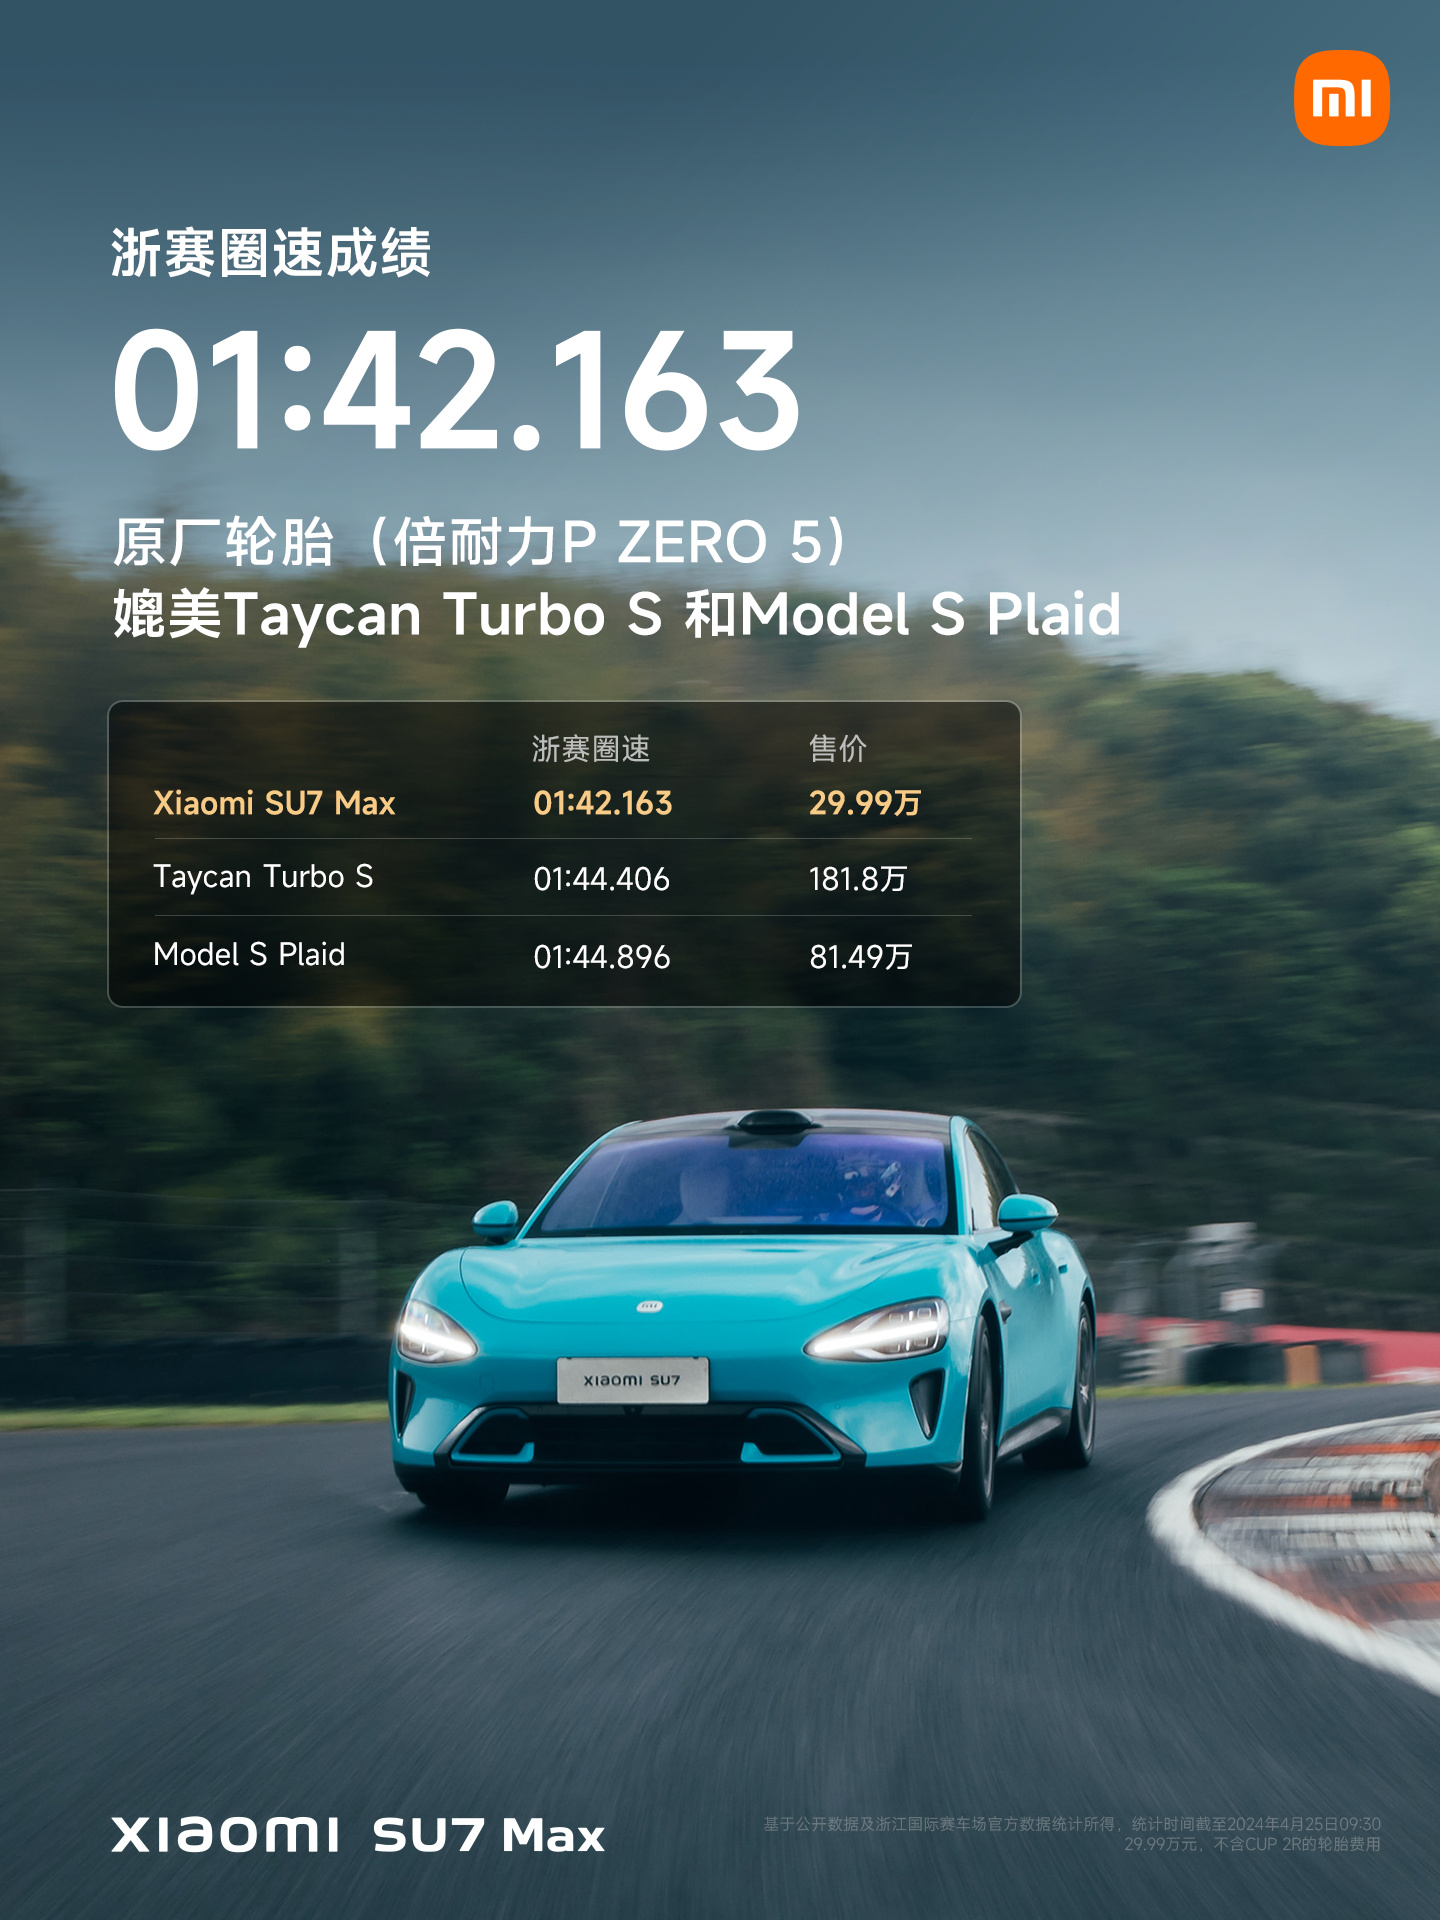 小米汽车 SU7 Max 浙赛成绩揭晓，搭配原厂轮胎跑出 1 分 42 秒 163